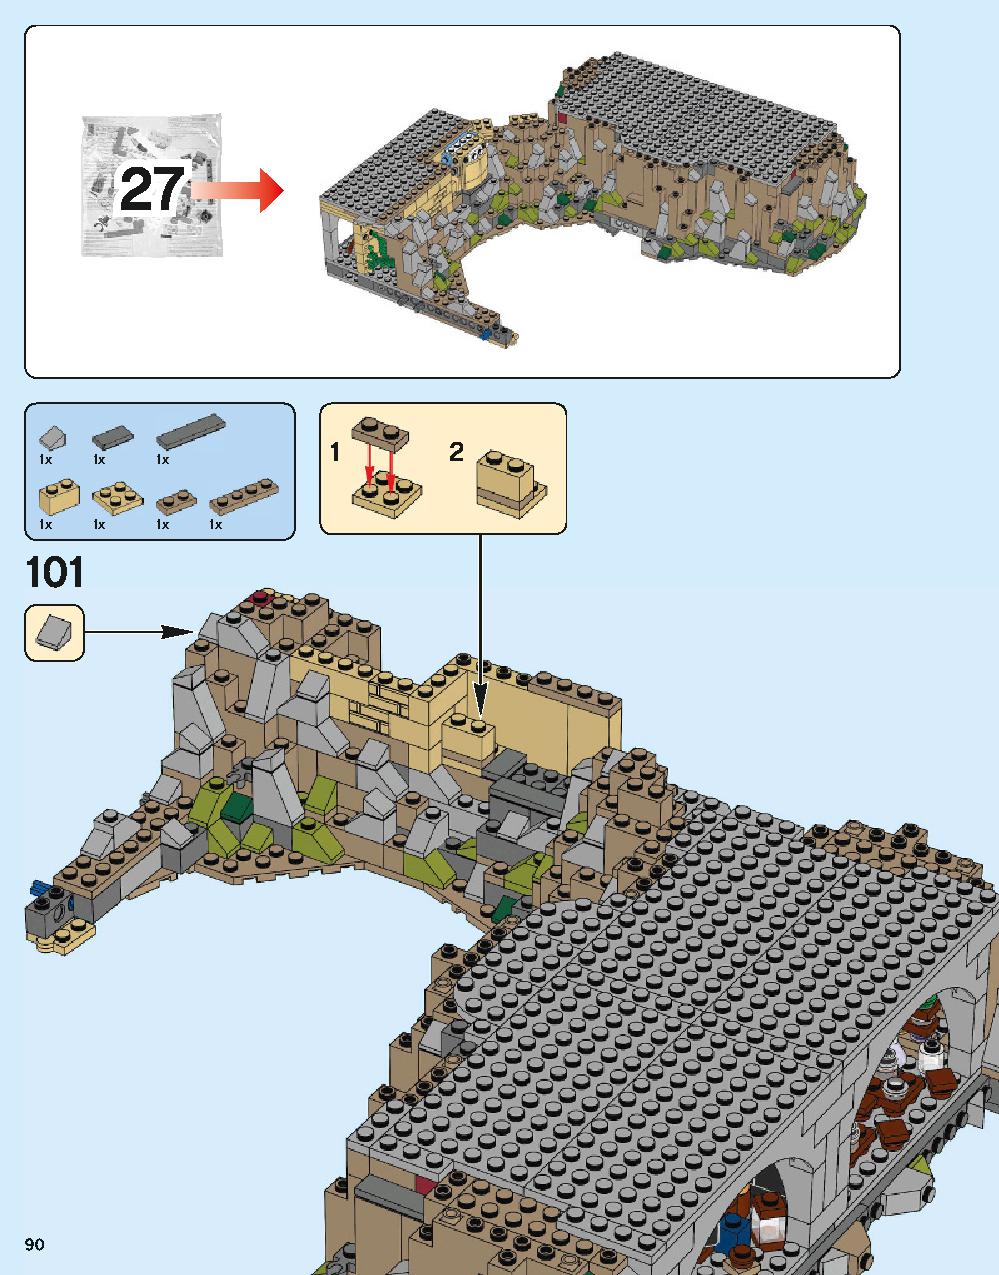 ホグワーツ城 71043 レゴの商品情報 レゴの説明書・組立方法 90 page